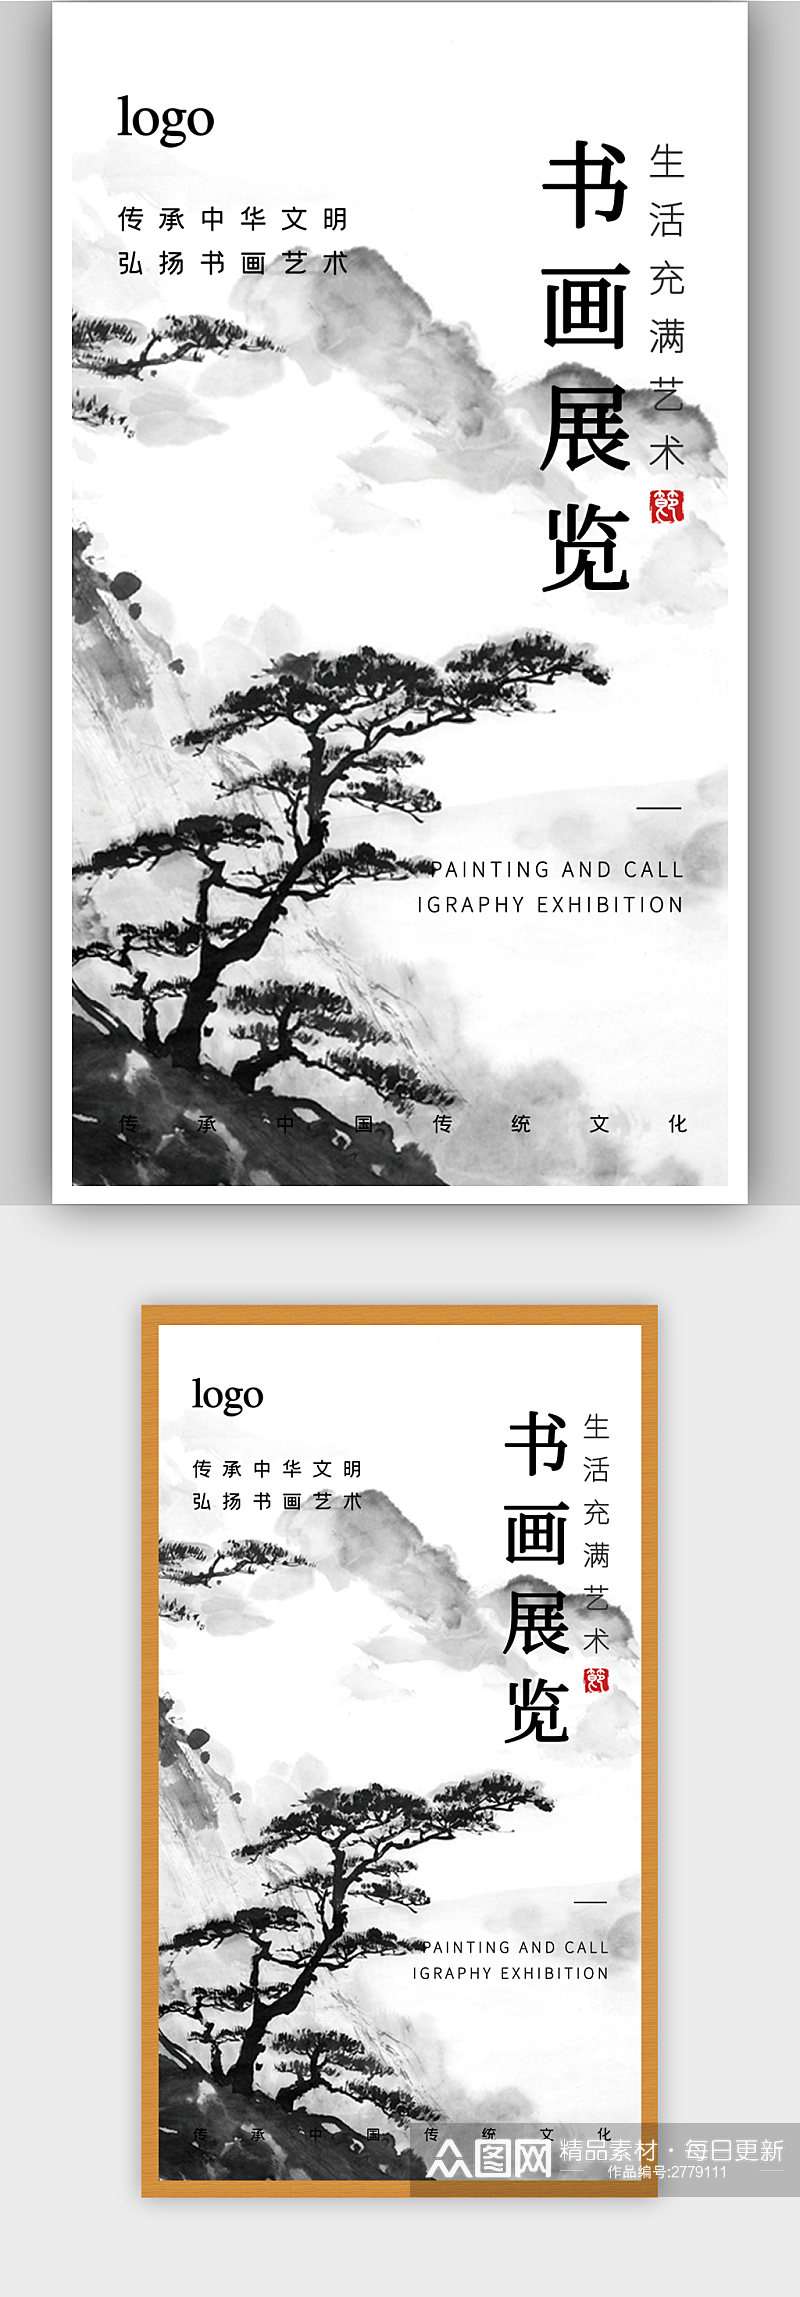 中式书画展览宣传海报素材